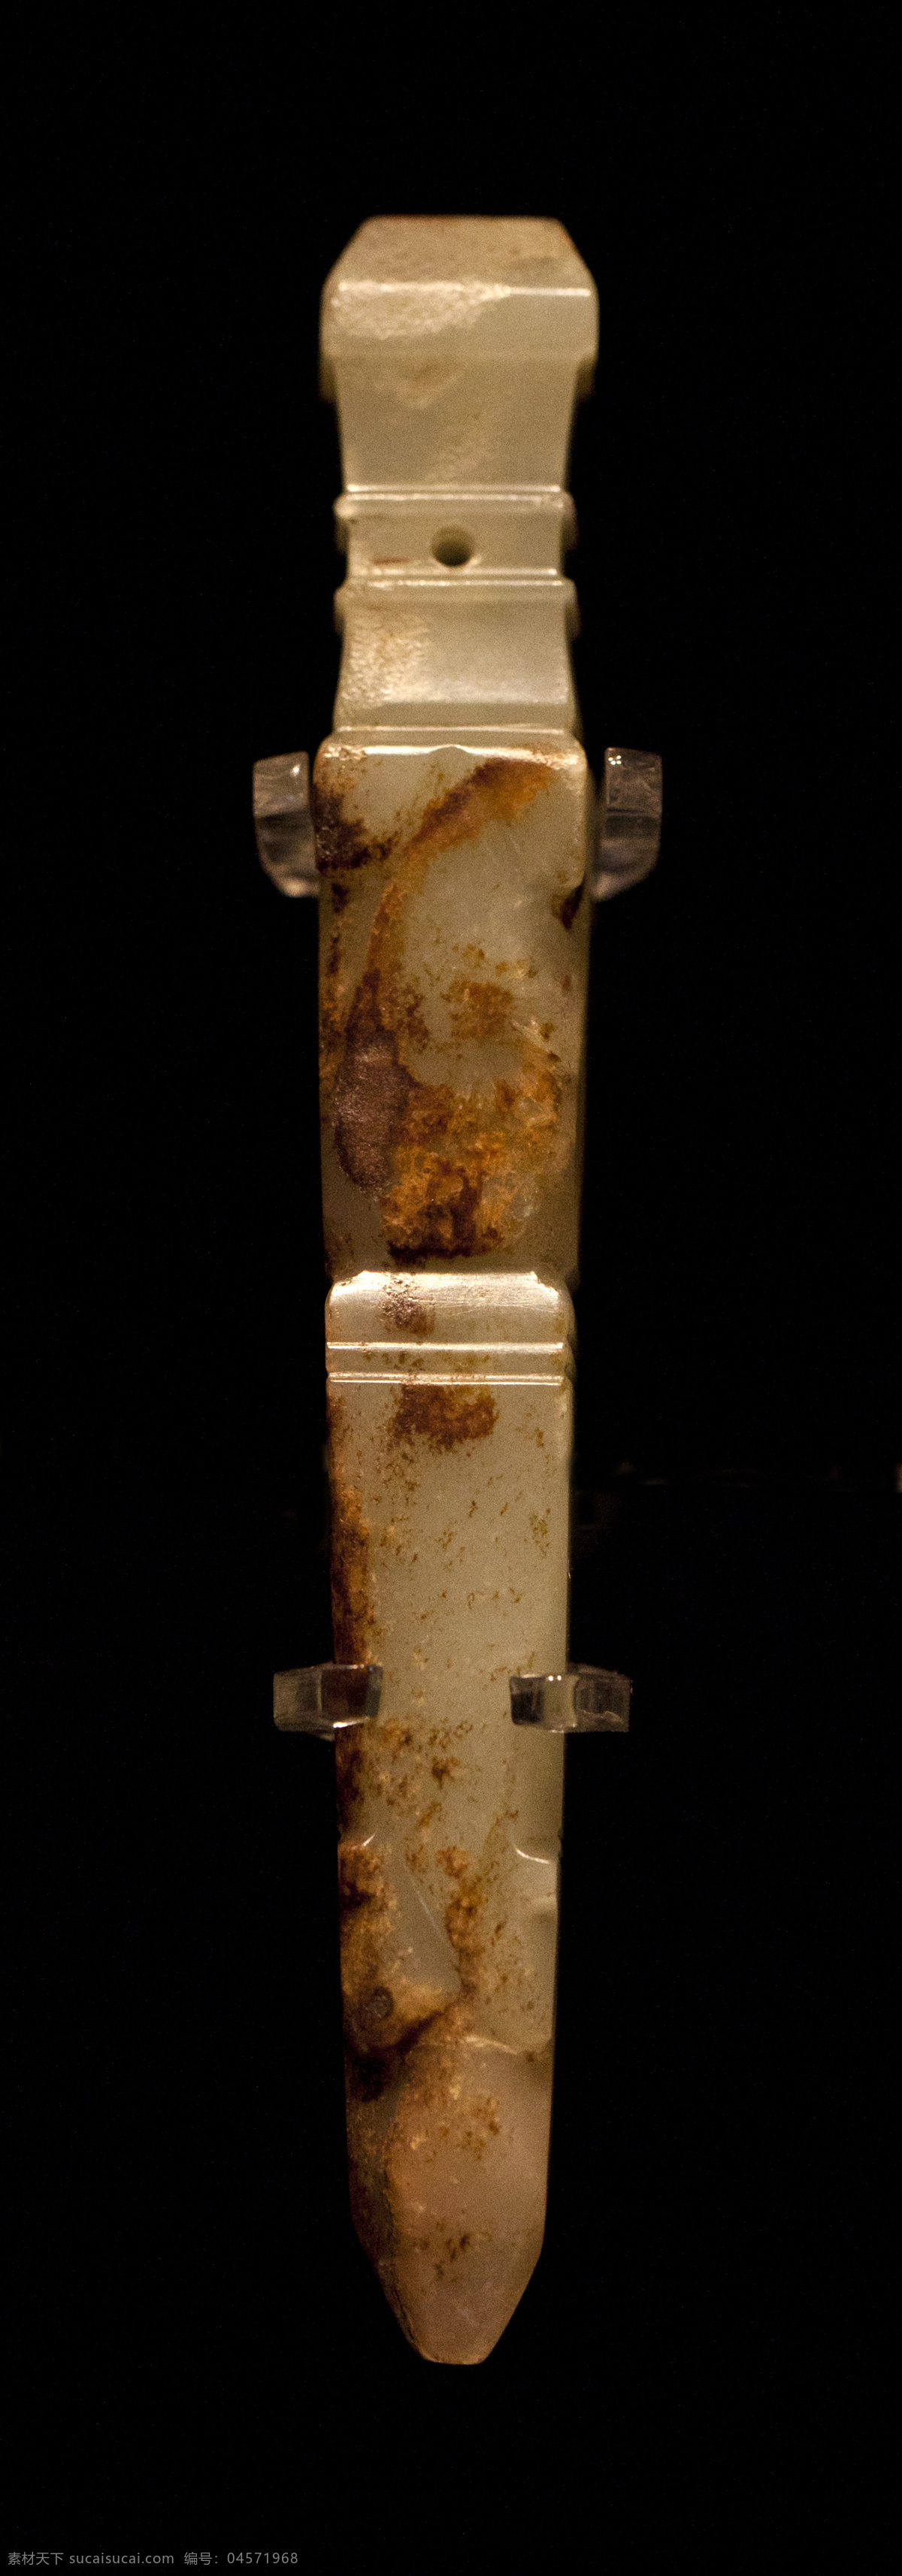 玉弦纹柄形器 商 玉器 柄形 节 古玉 文物 收藏 首都 博物馆 玉石器 传统文化 文化艺术